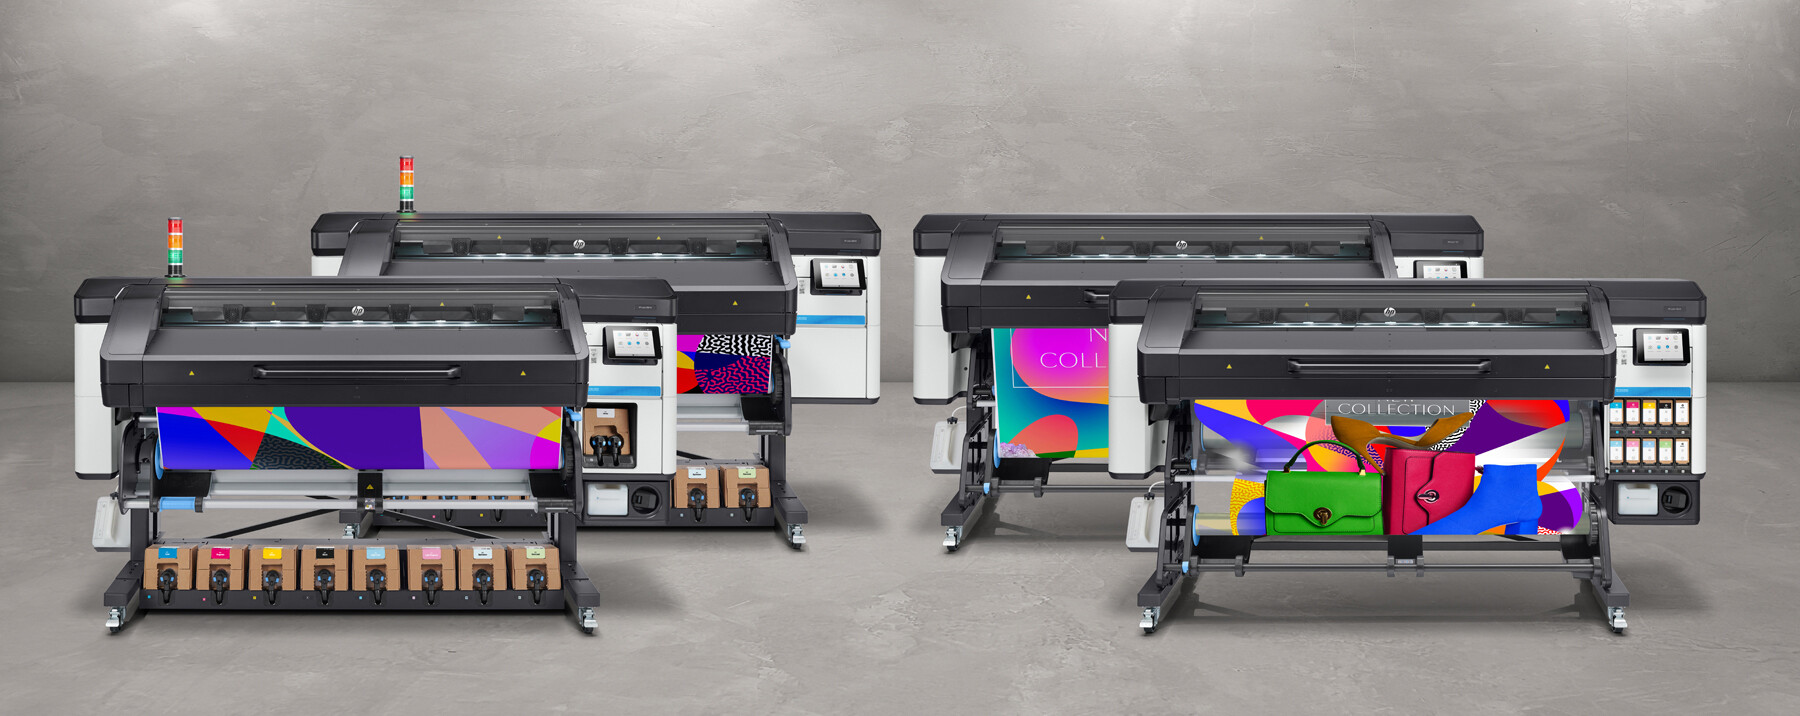 เอชพี เปิดตัวกลุ่มผลิตภัณฑ์เครื่องพิมพ์ HP Latex ปฏิวัติอุตสหกรรมการพิมพ์ดิจิทัล เพิ่มความหลากหลายสู่ความยั่งยืน